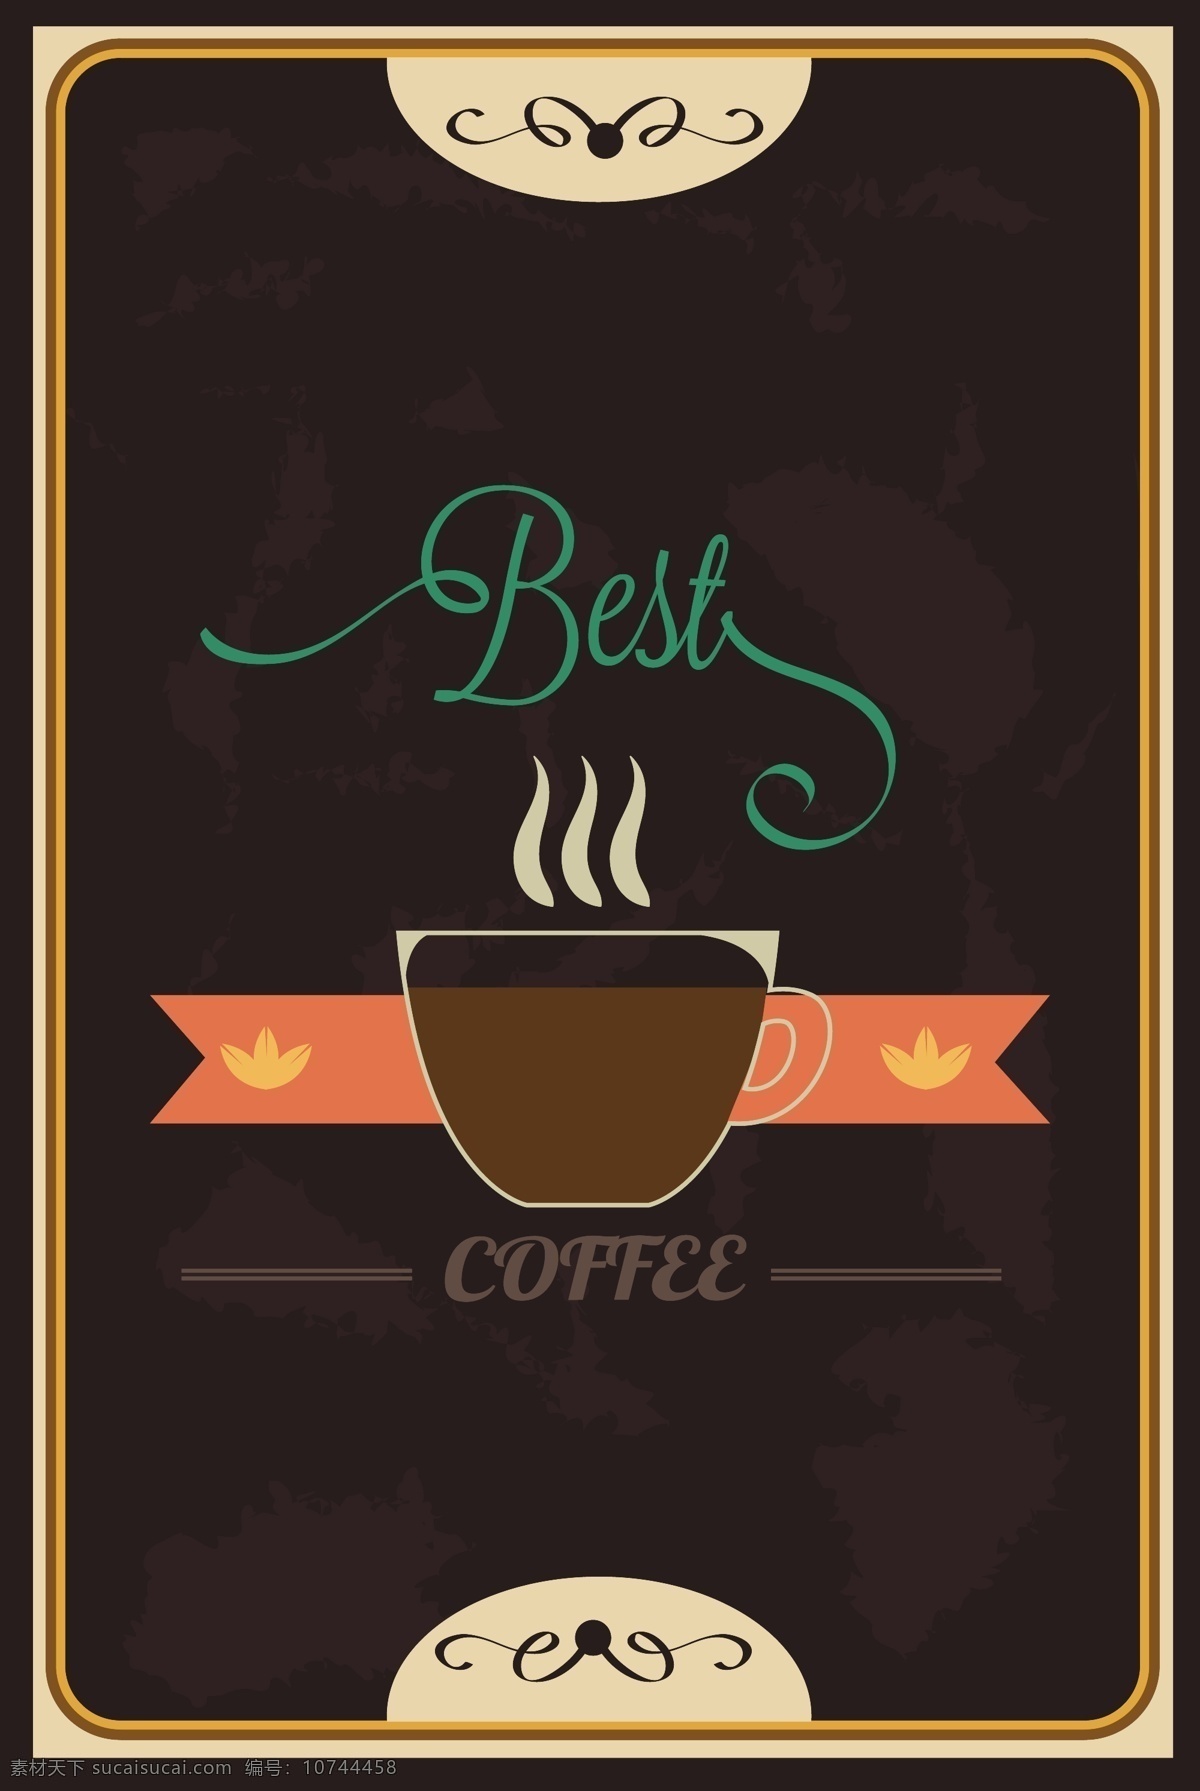 咖啡 餐饮 背景 矢量 模板下载 杯子 丝带 图标 标志 底纹 其他模板 矢量素材 黑色